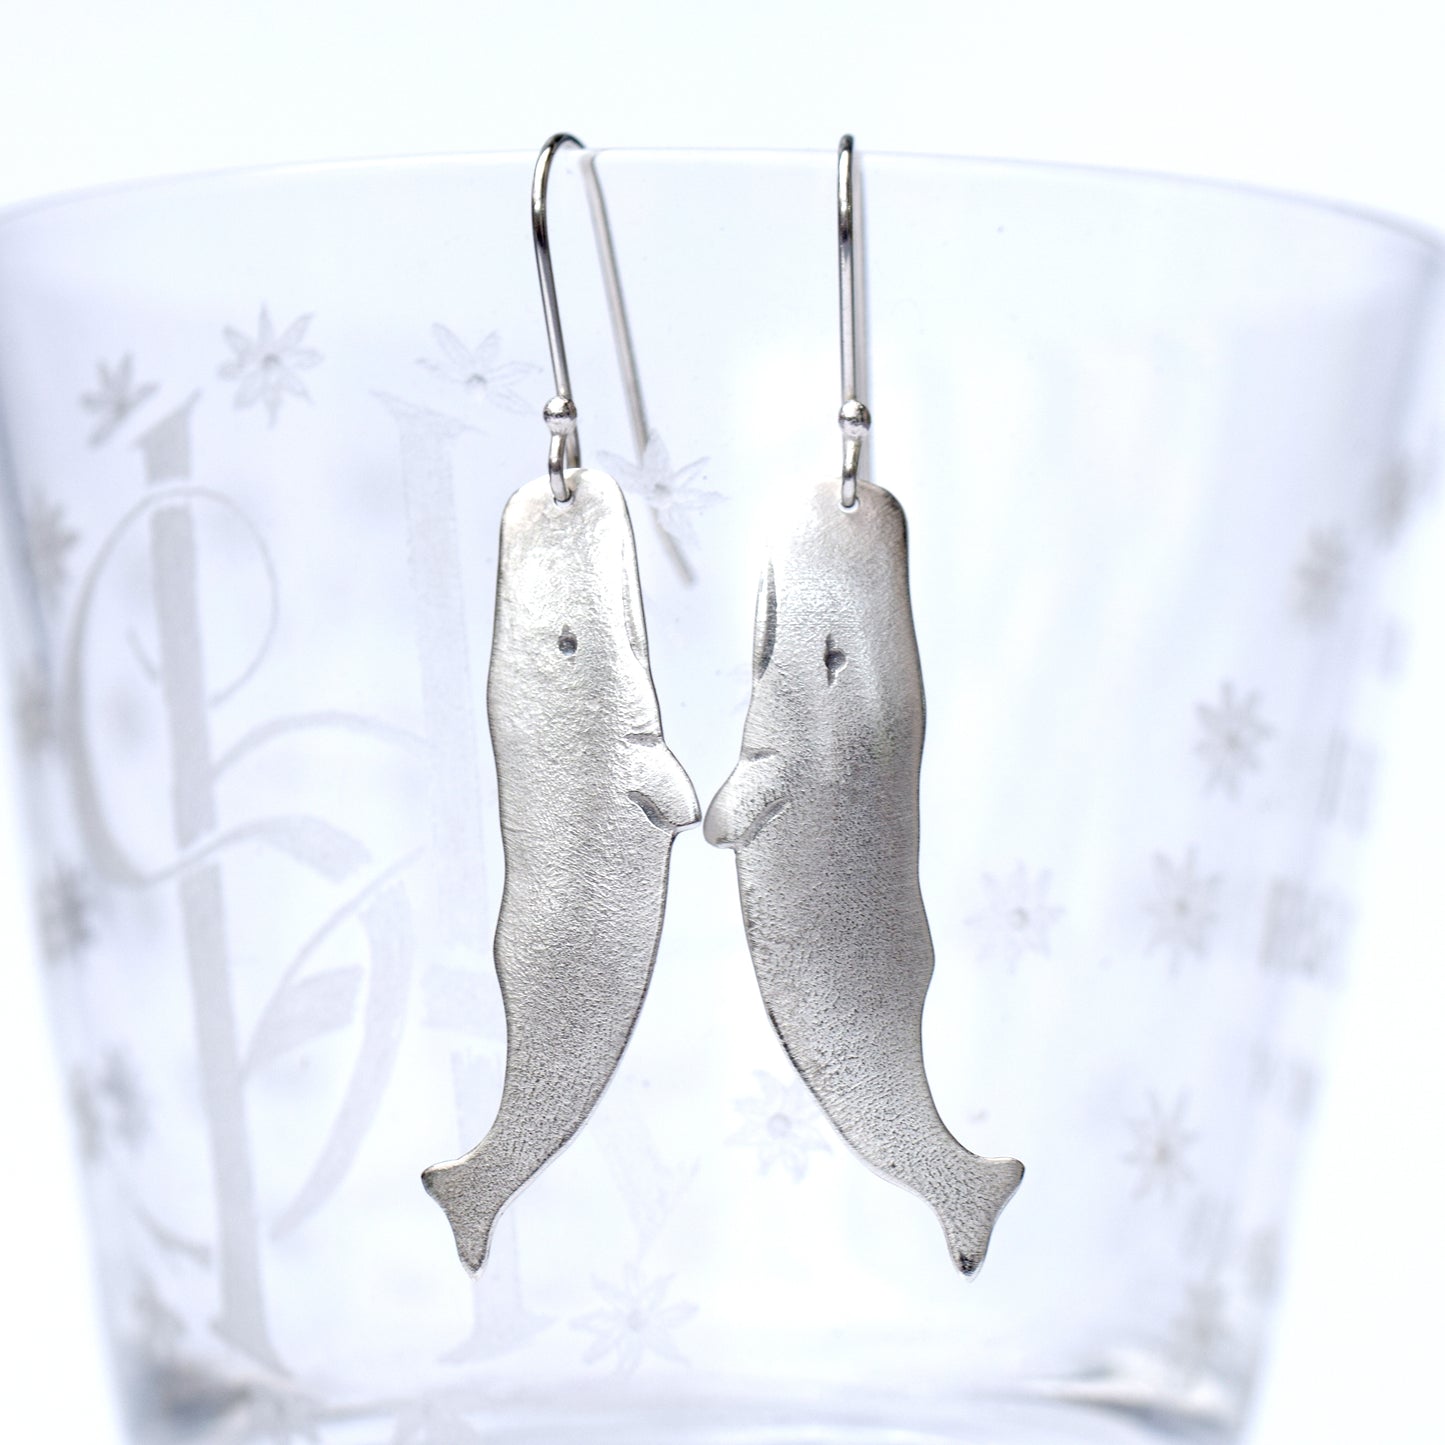 Sperm whale dangle earrings in Sterling silver